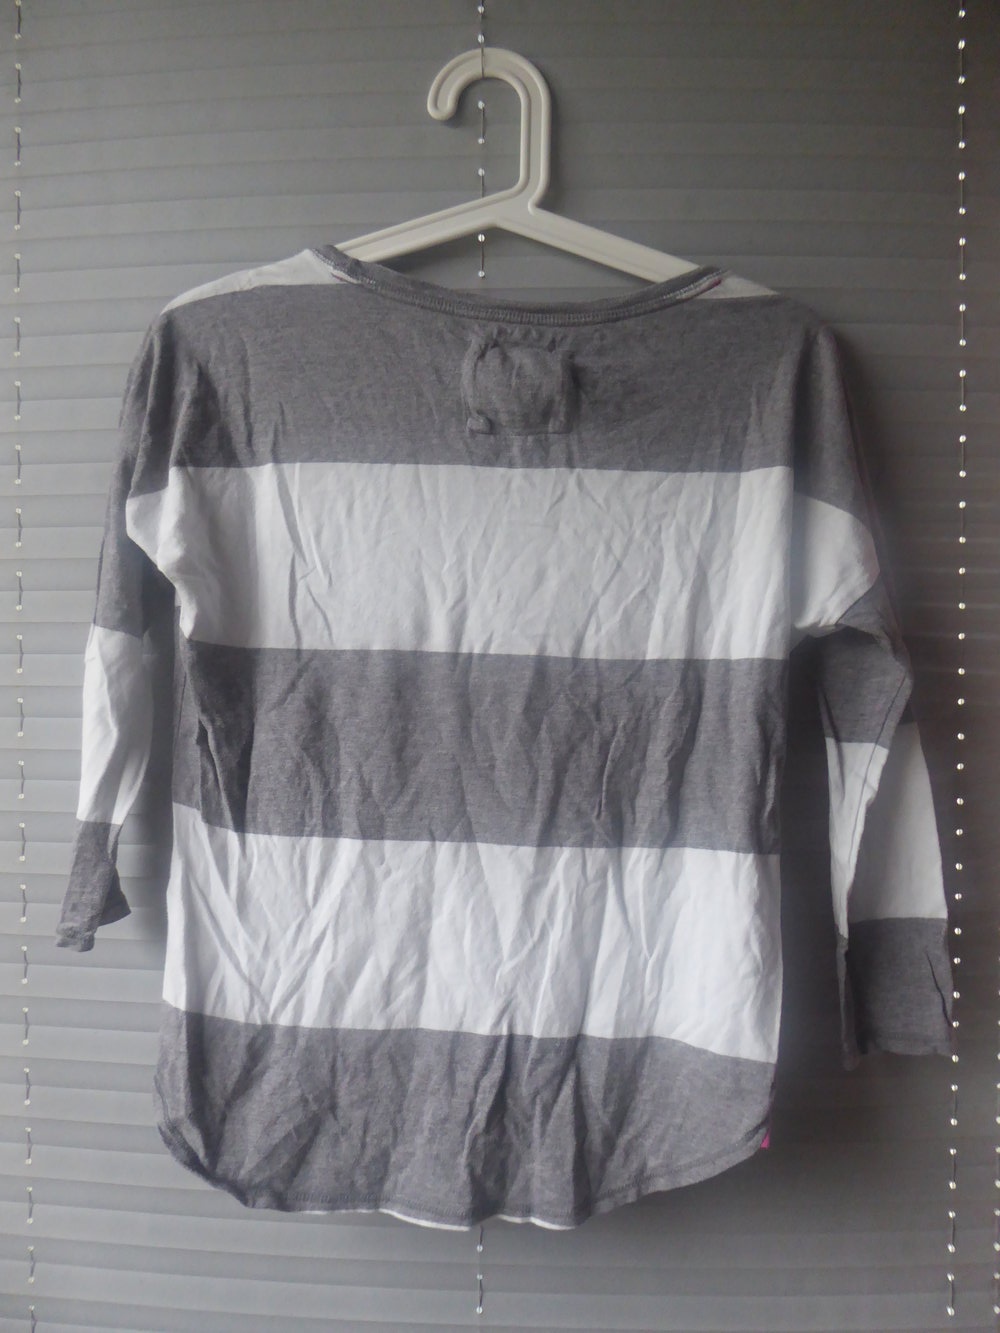 Grau/weißes 3/4 arm Shirt von Abercrombie&fitch